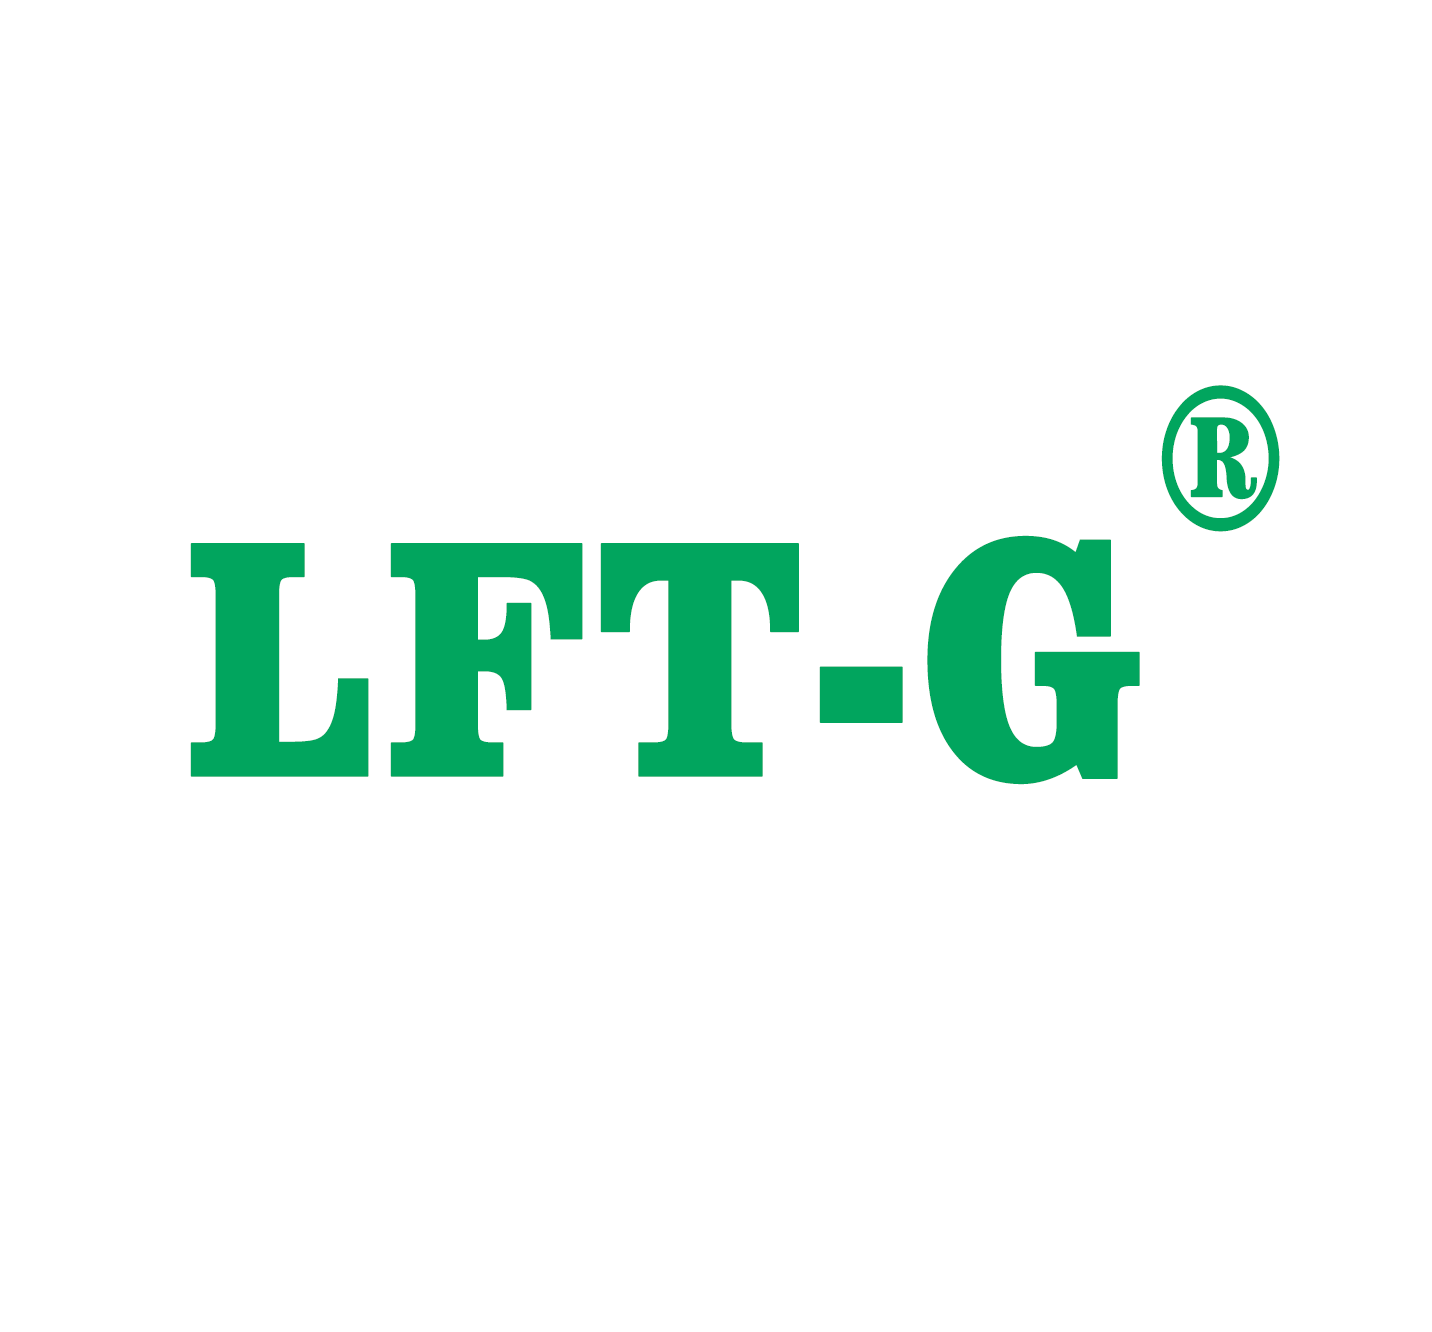  LFT-G inizia un nuovo viaggio nel nuovo anno